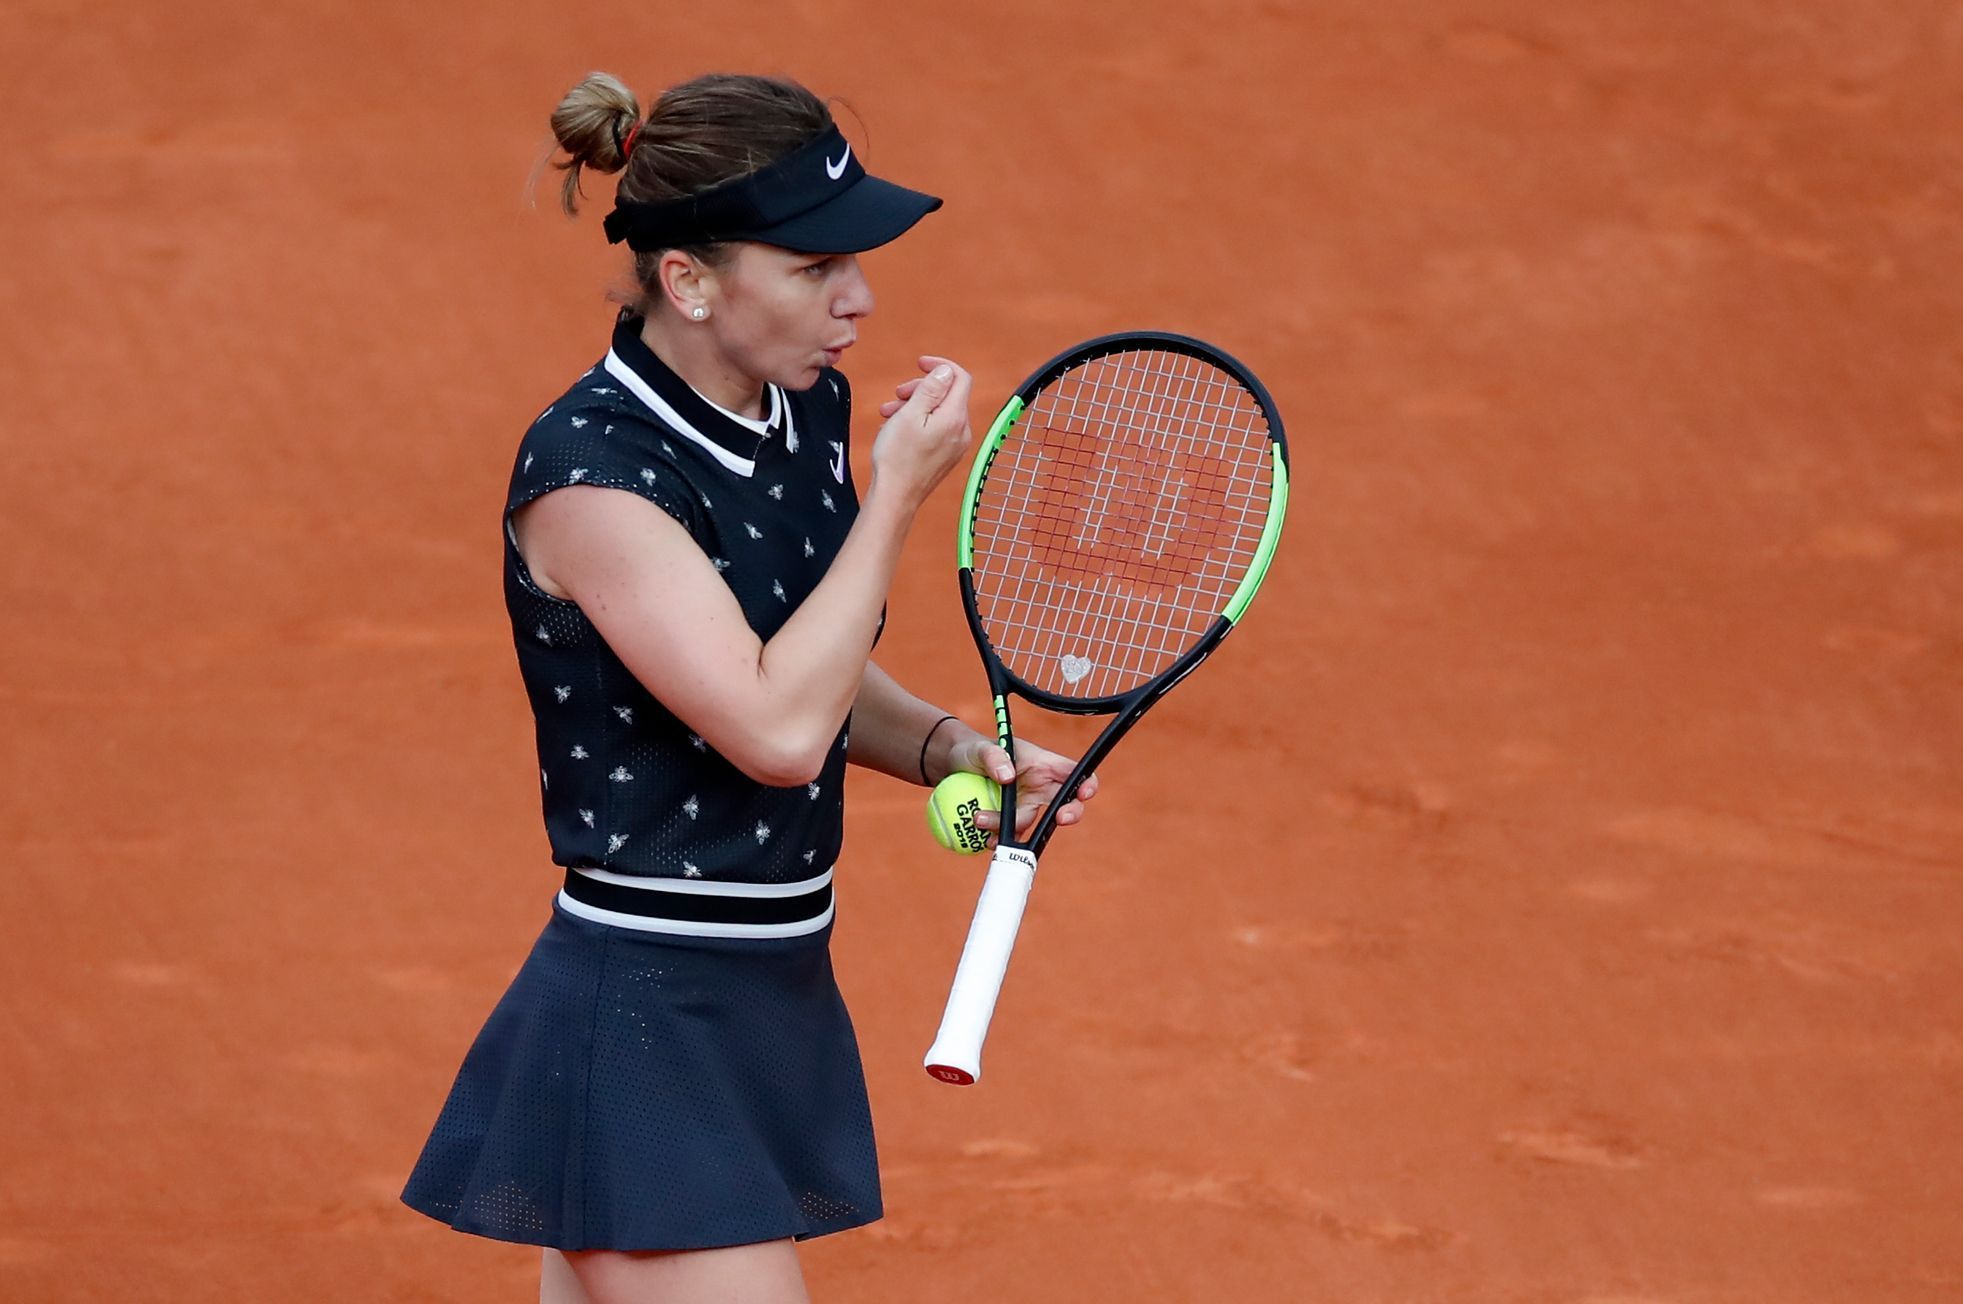 Móda na French Open 2019 (Simona Halepová)